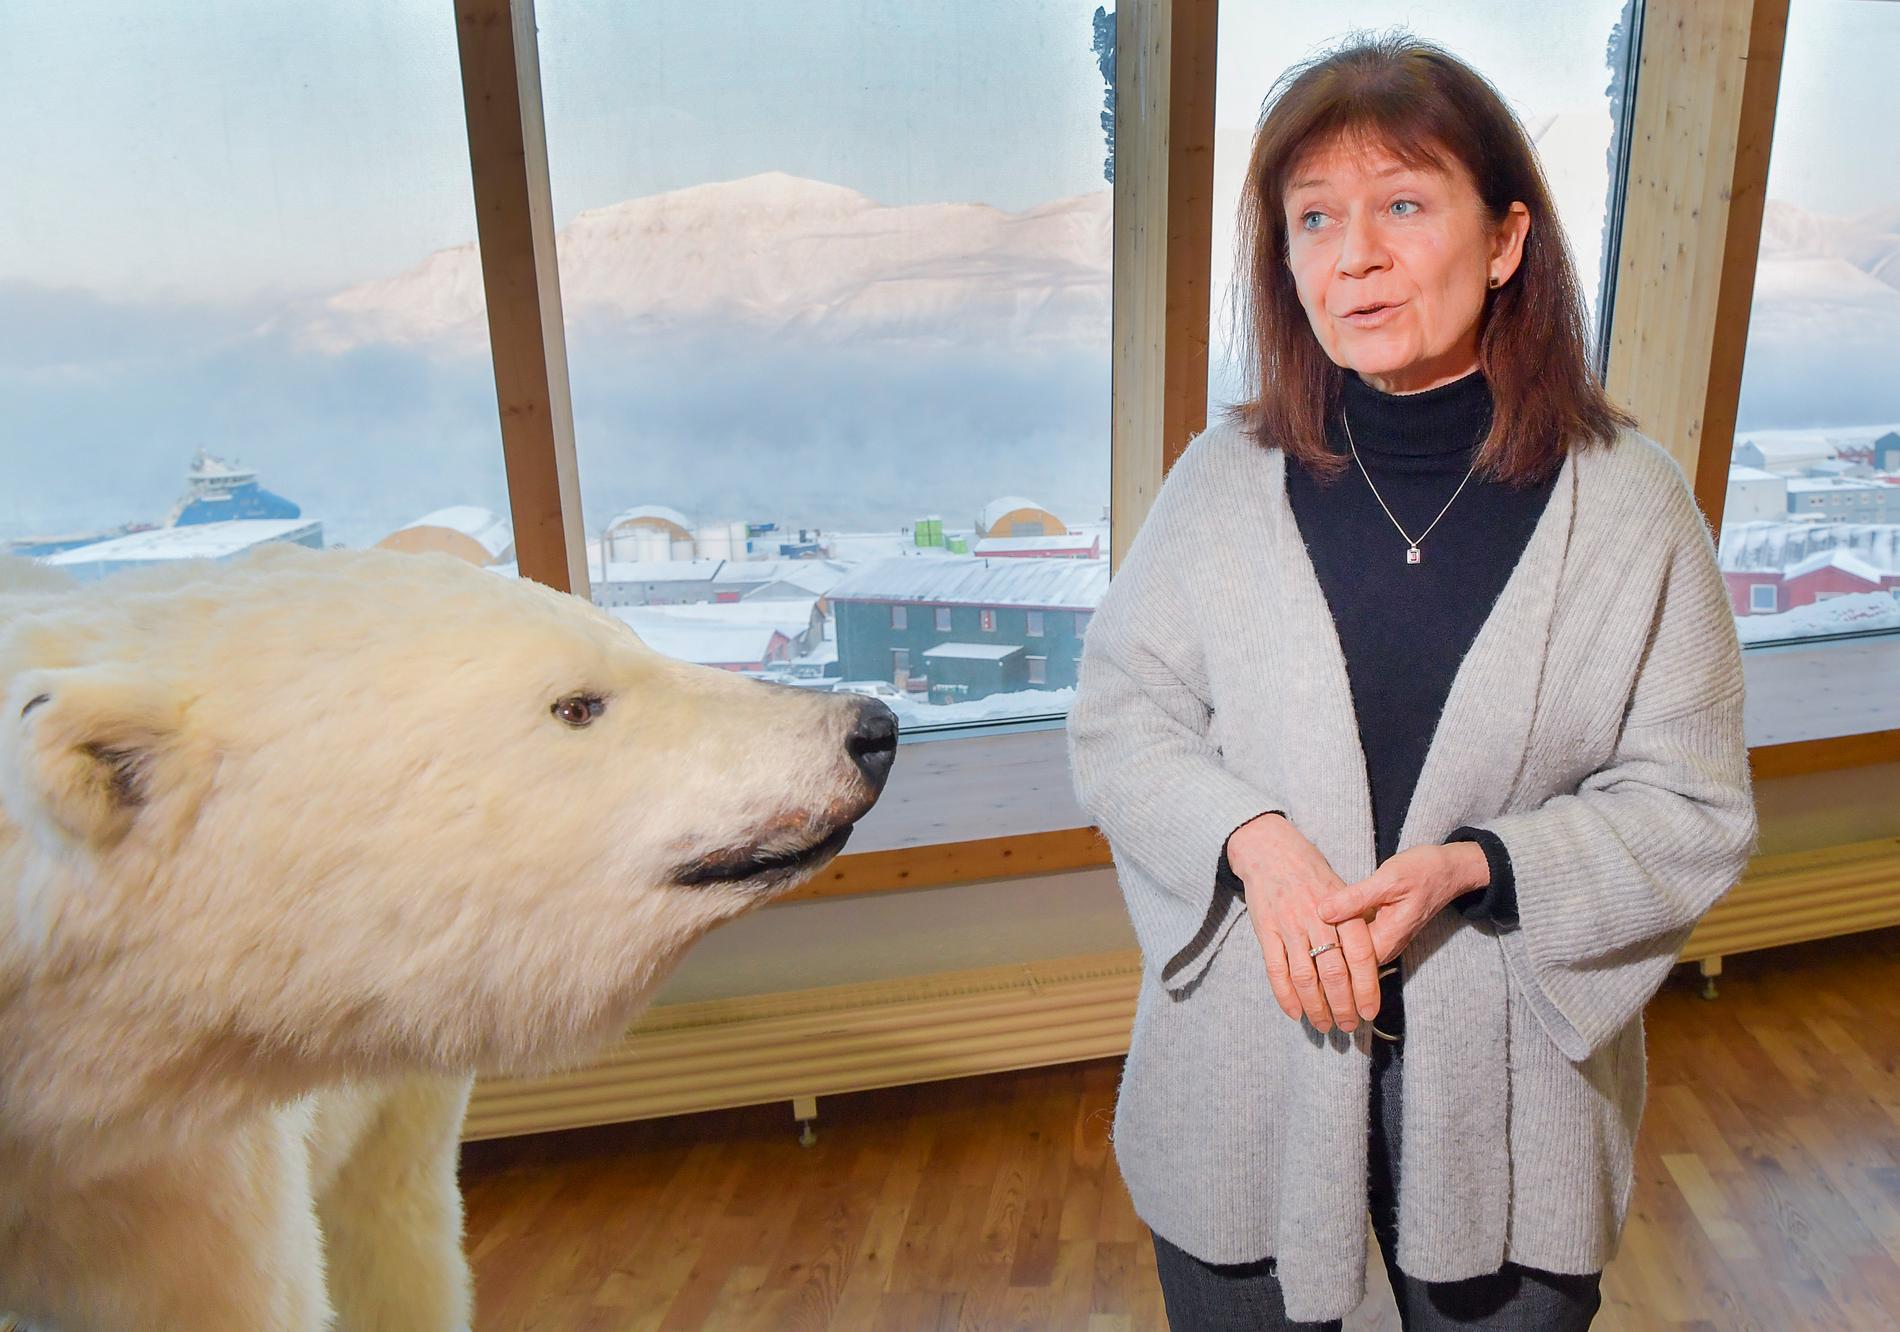 Sysselmannen Kjerstin Askholt är den norska regeringens högsta representant på Svalbard.